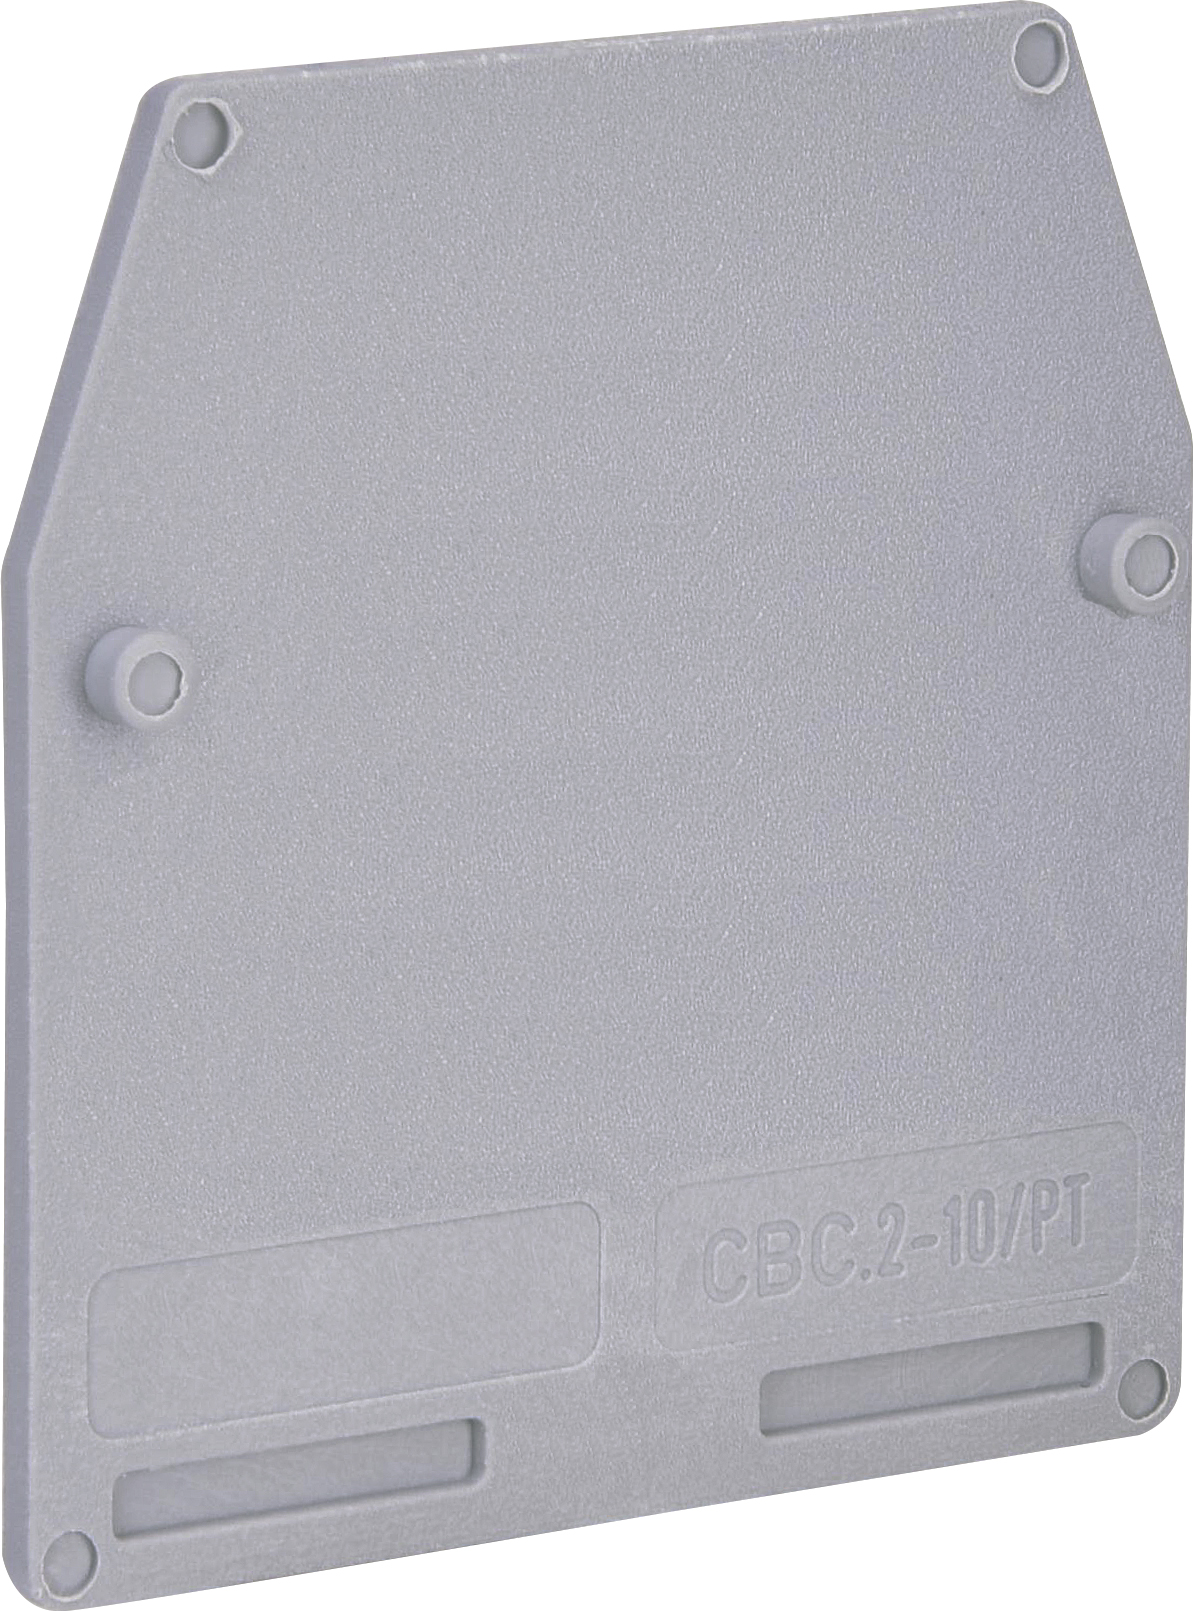 Замыкающая крышка для клемм ETI ESC-CBC.2-10/PT (003903010)